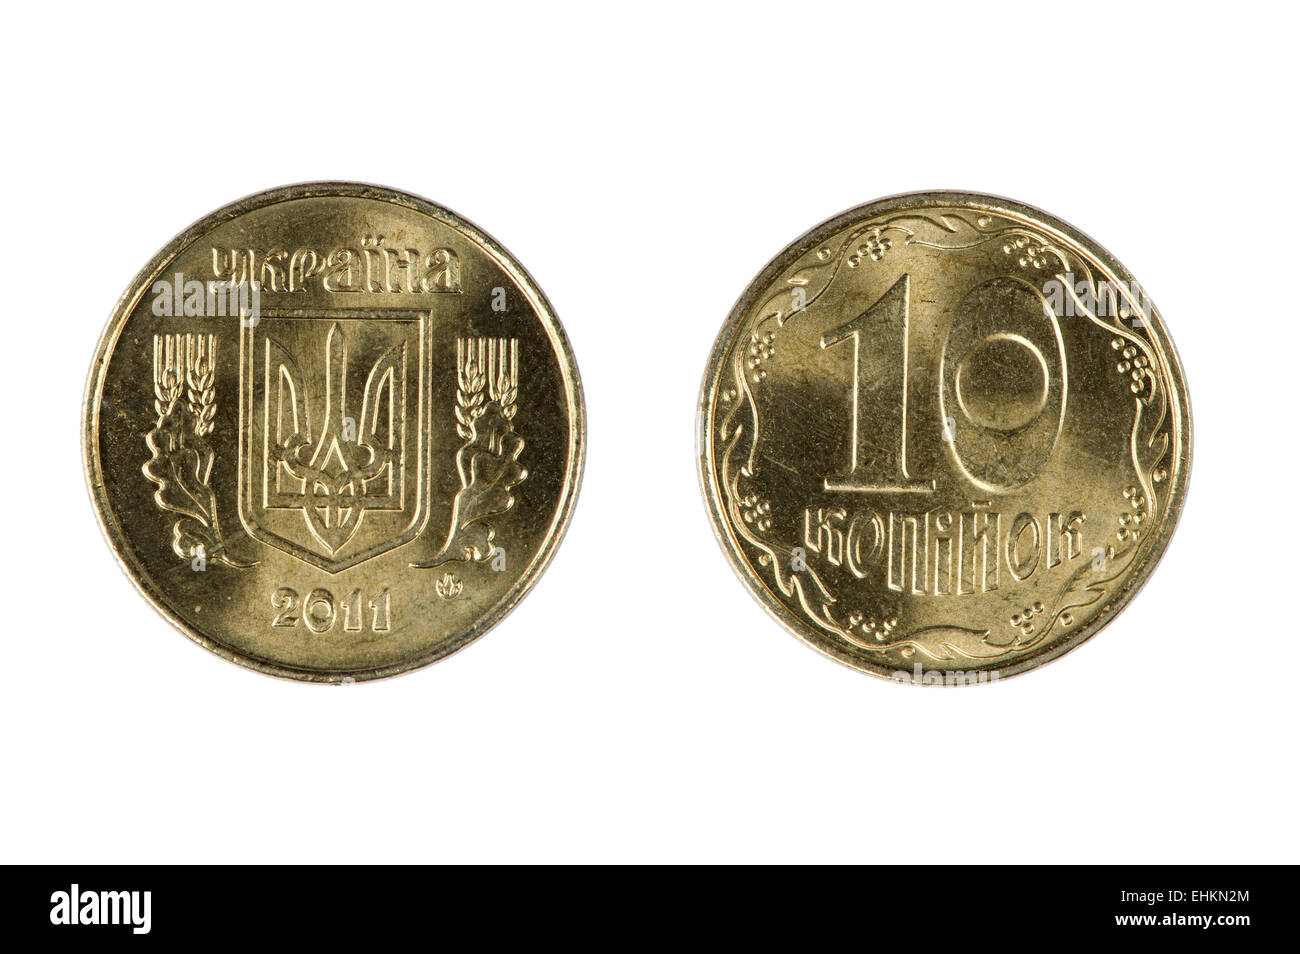 isoliertes Objekt auf weiß - Münzen der Ukraine Stockfoto